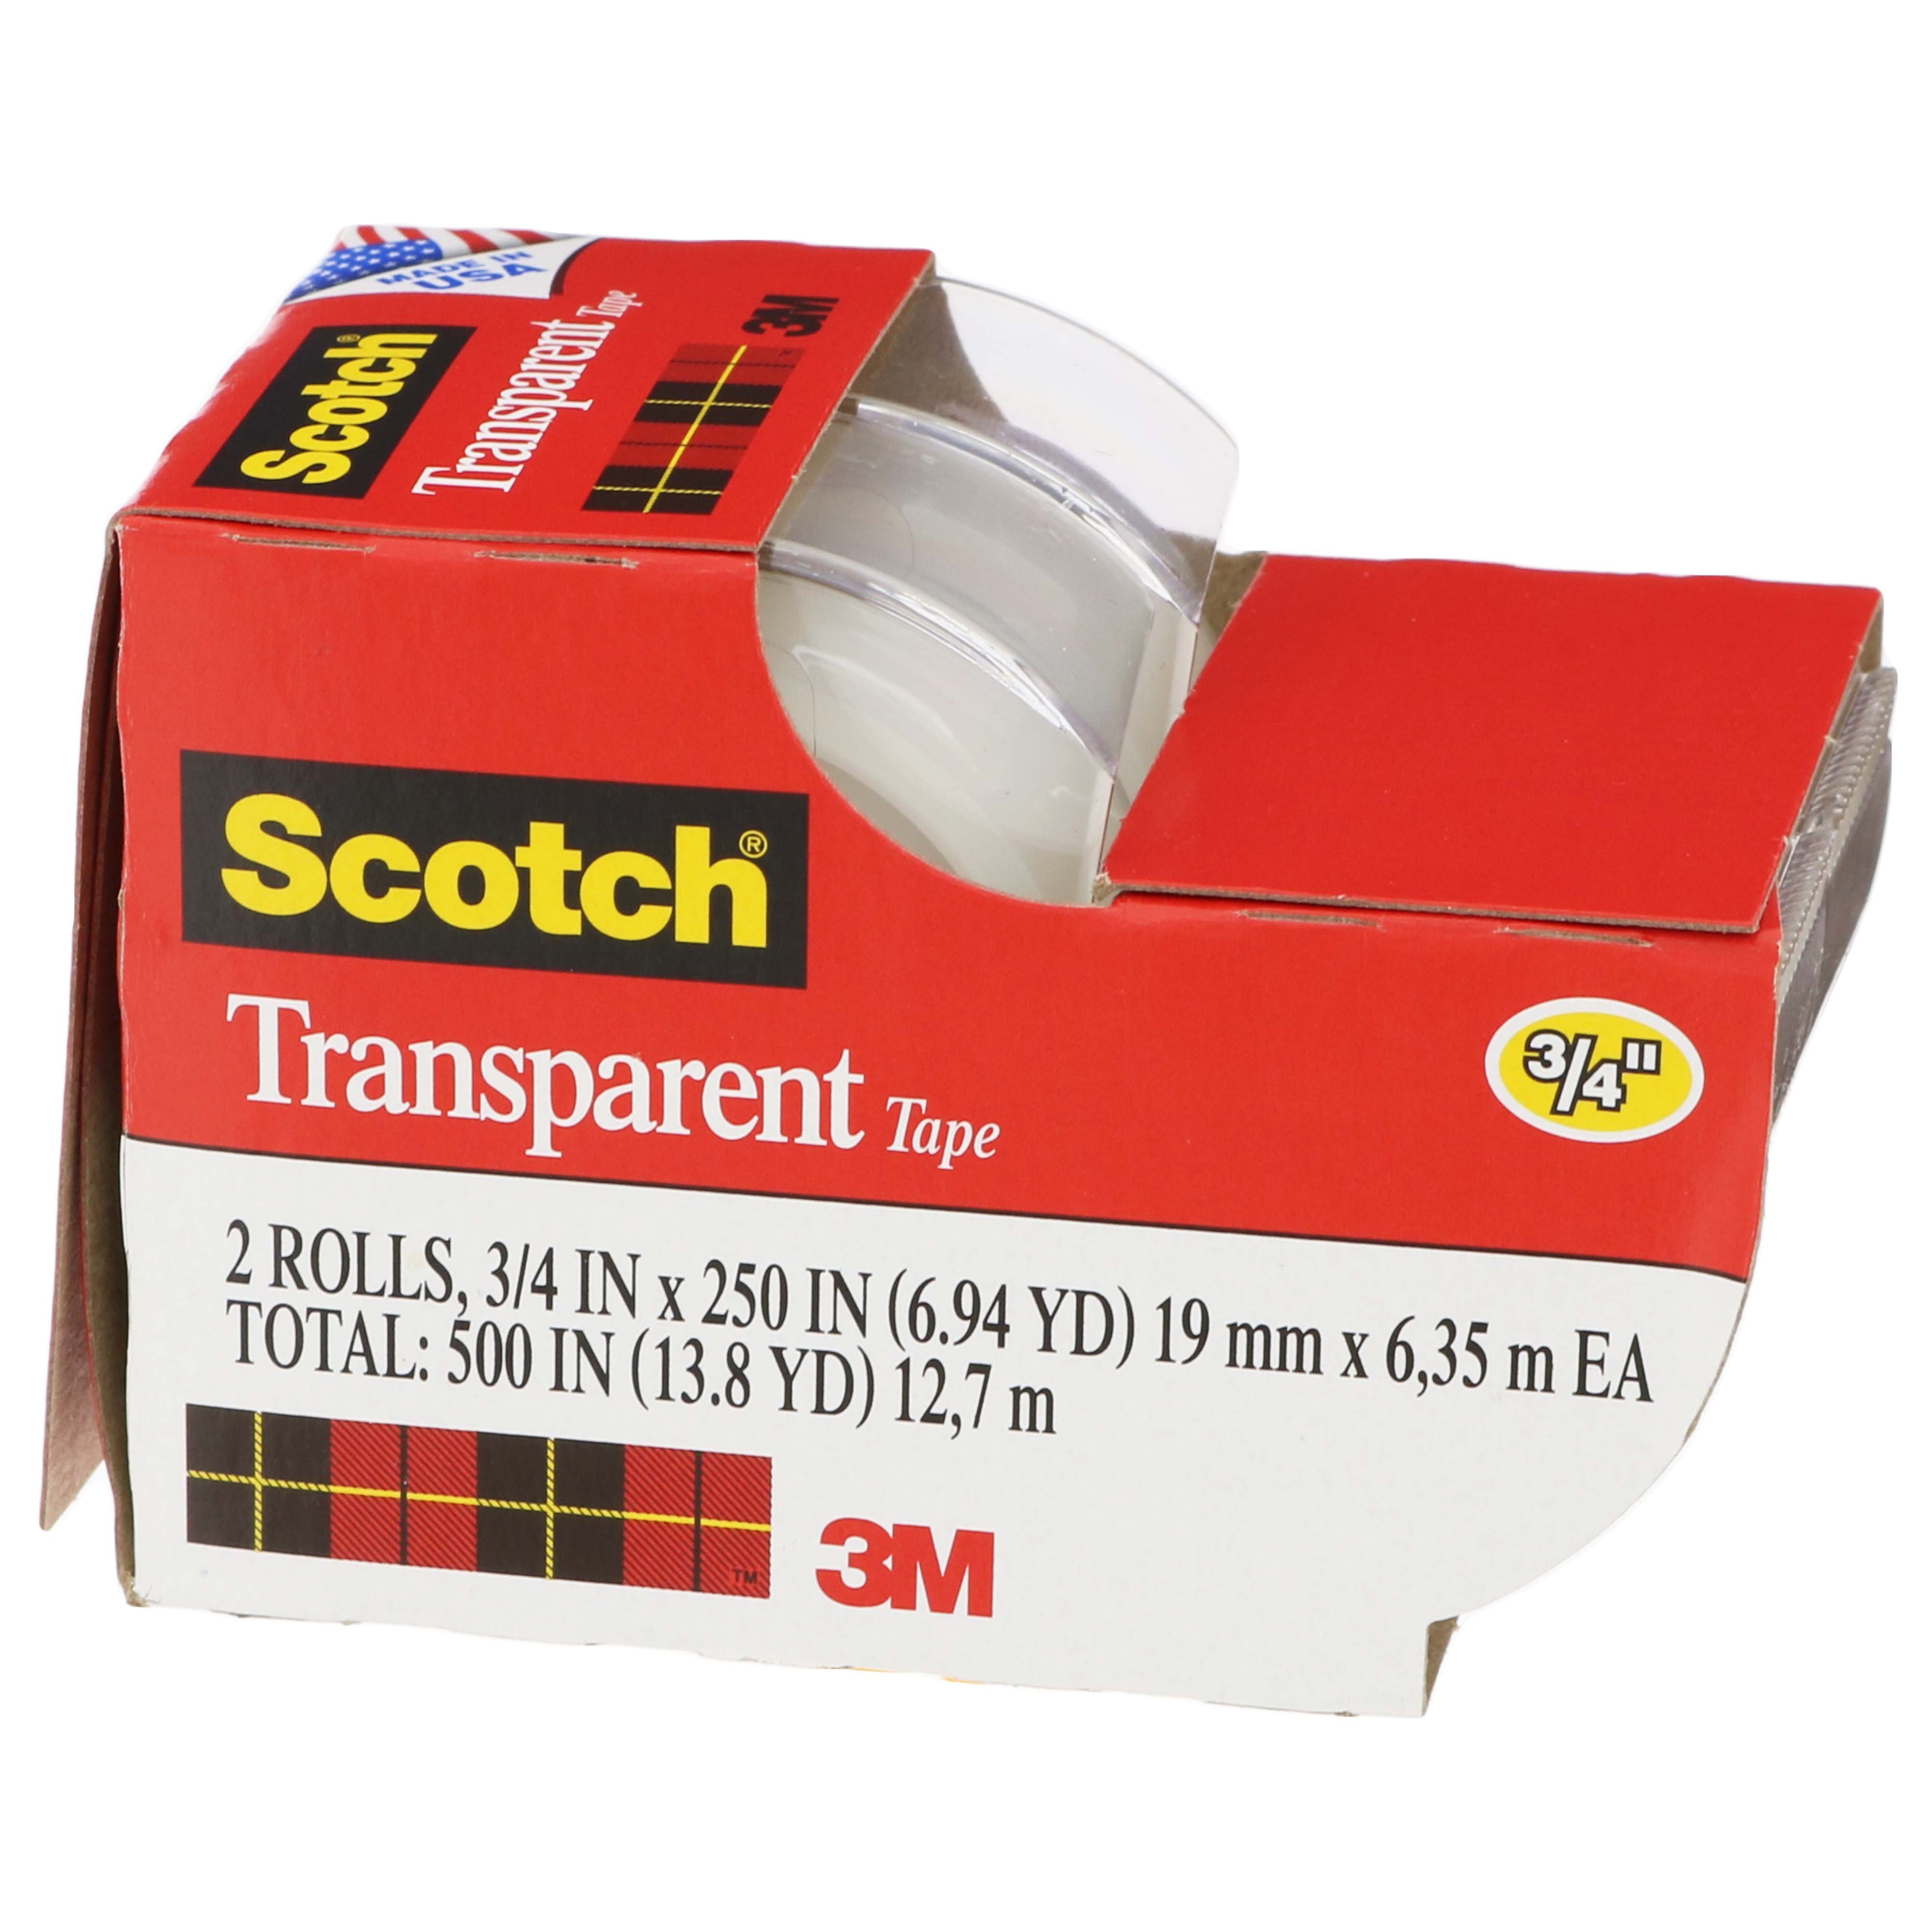 Scotch Transparent Tape 2 Rolls - Shop Tape at H-E-B